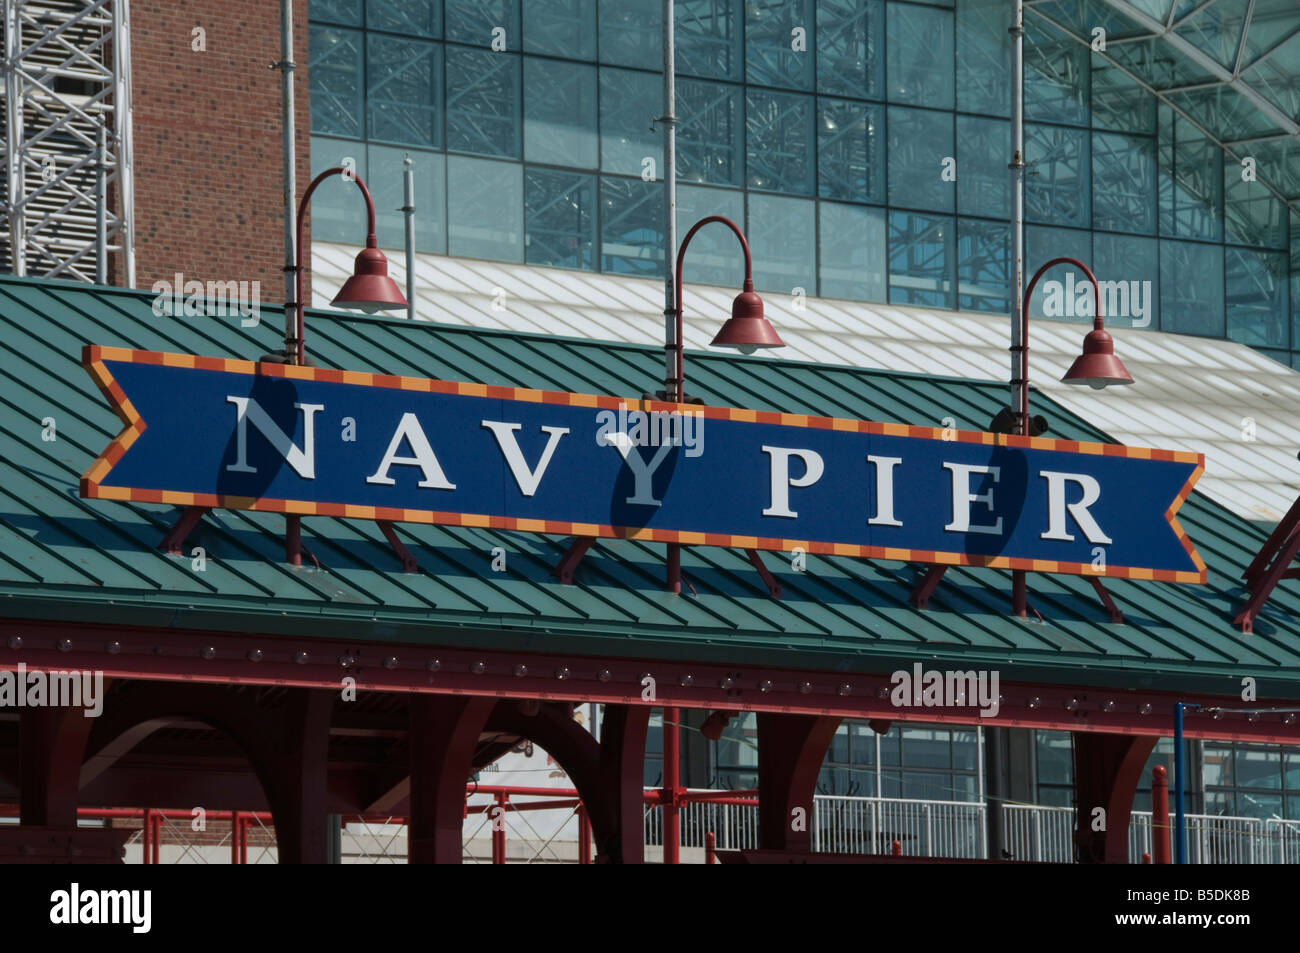 Le Navy Pier, Chicago, Illinois, USA, Amérique du Nord Banque D'Images